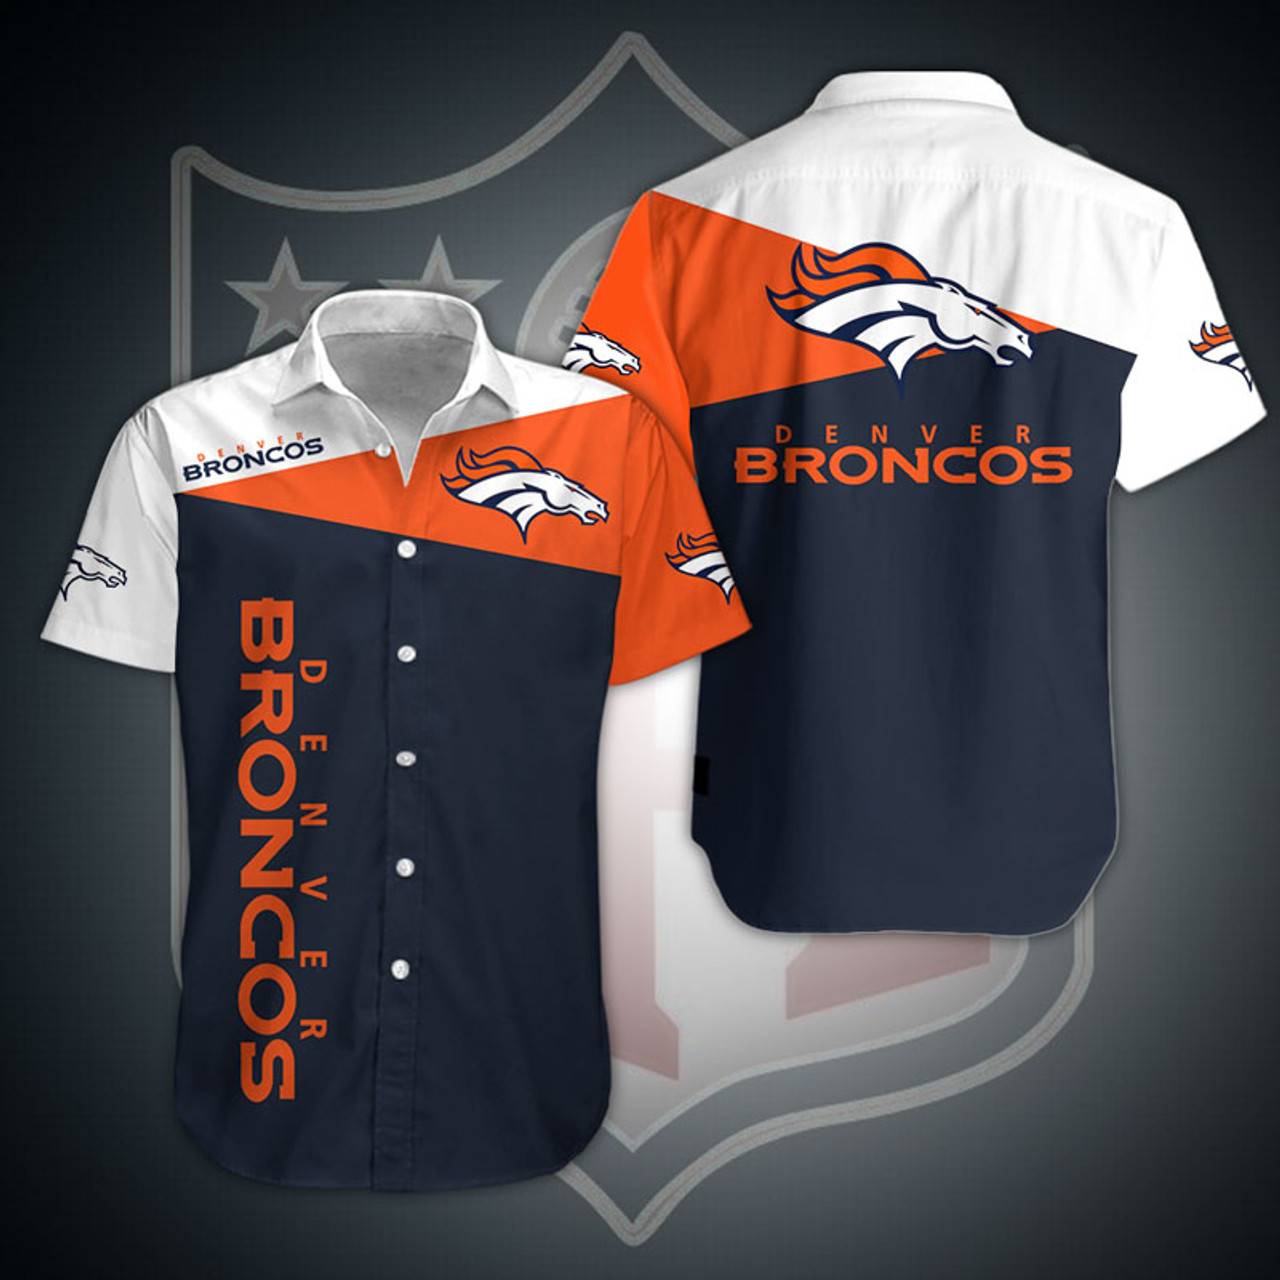 broncos team shirts